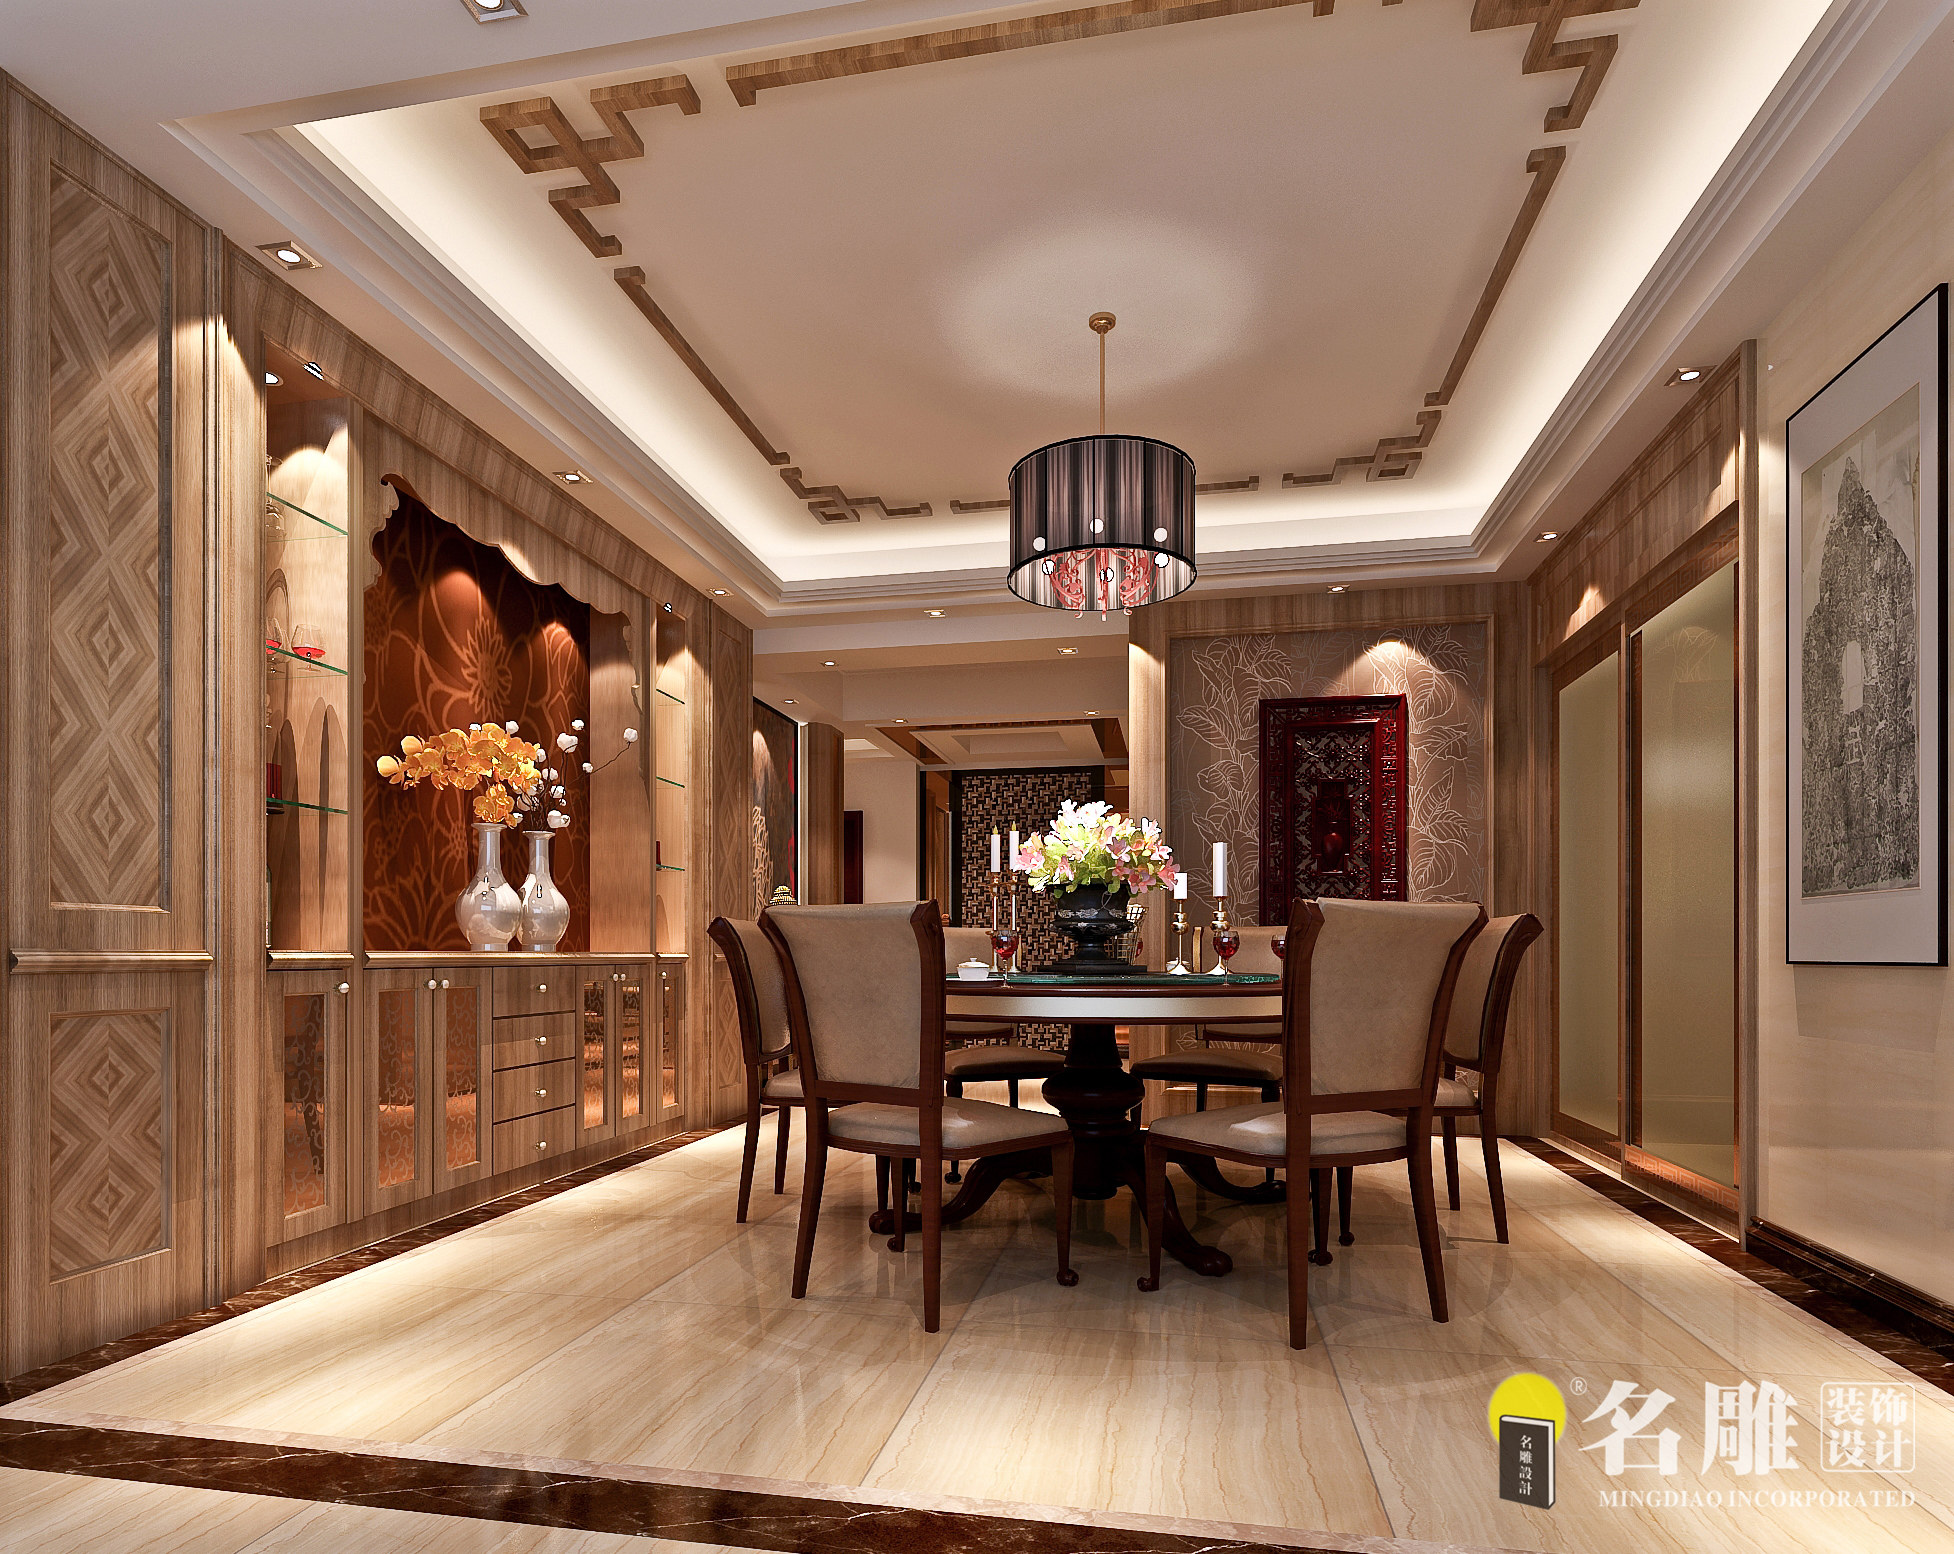 中式 三居 中国风 名雕装饰 温馨 餐厅图片来自名雕装饰设计在186平三居室中国风温馨家居的分享